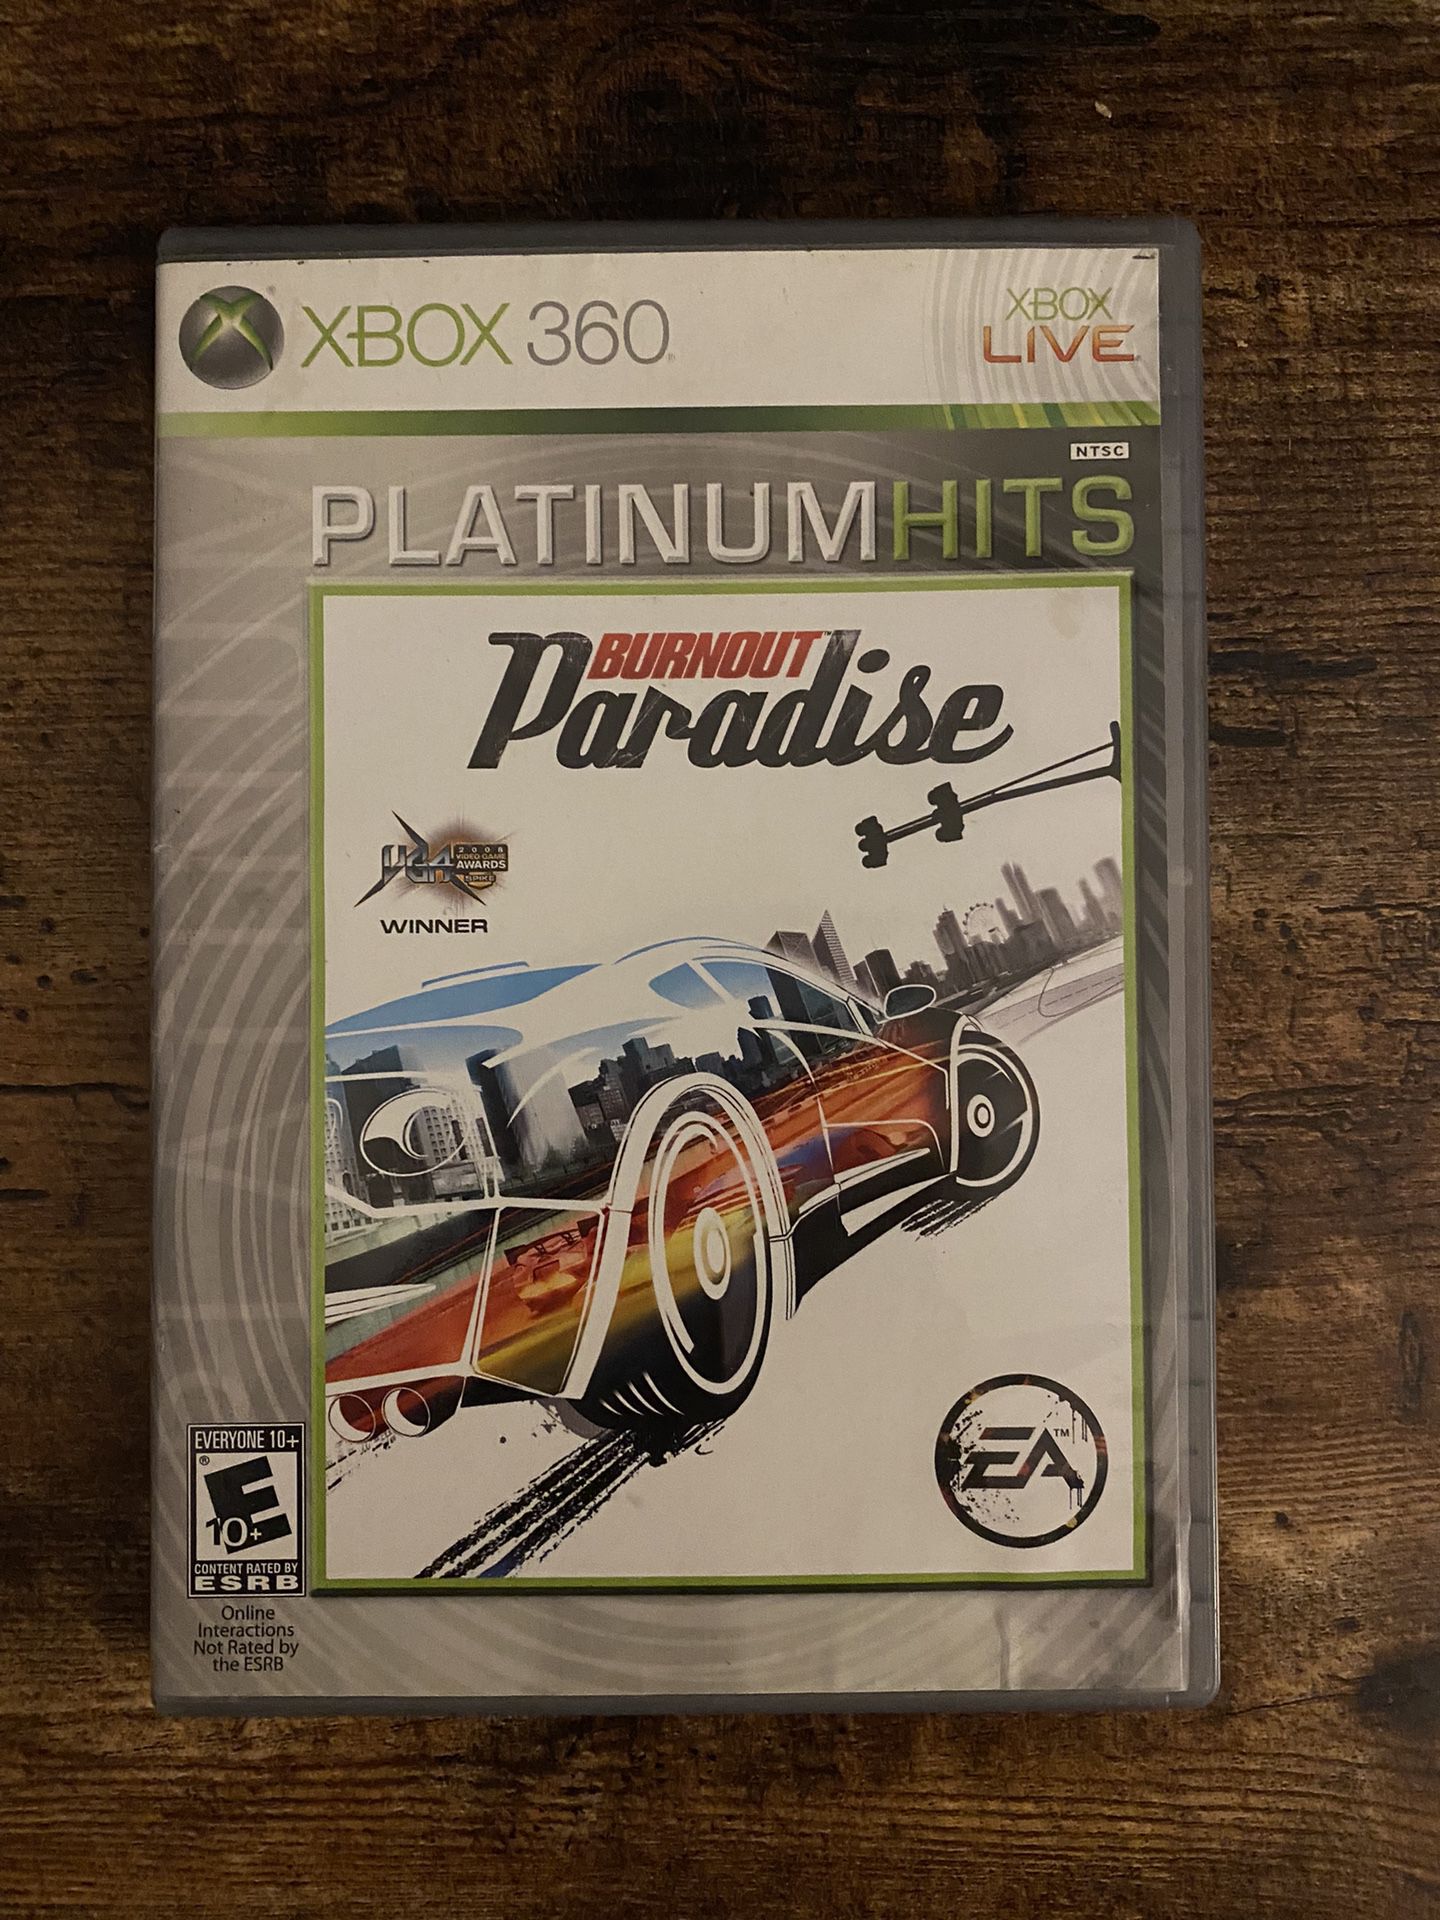 Burnout Paradise - Xbox 360